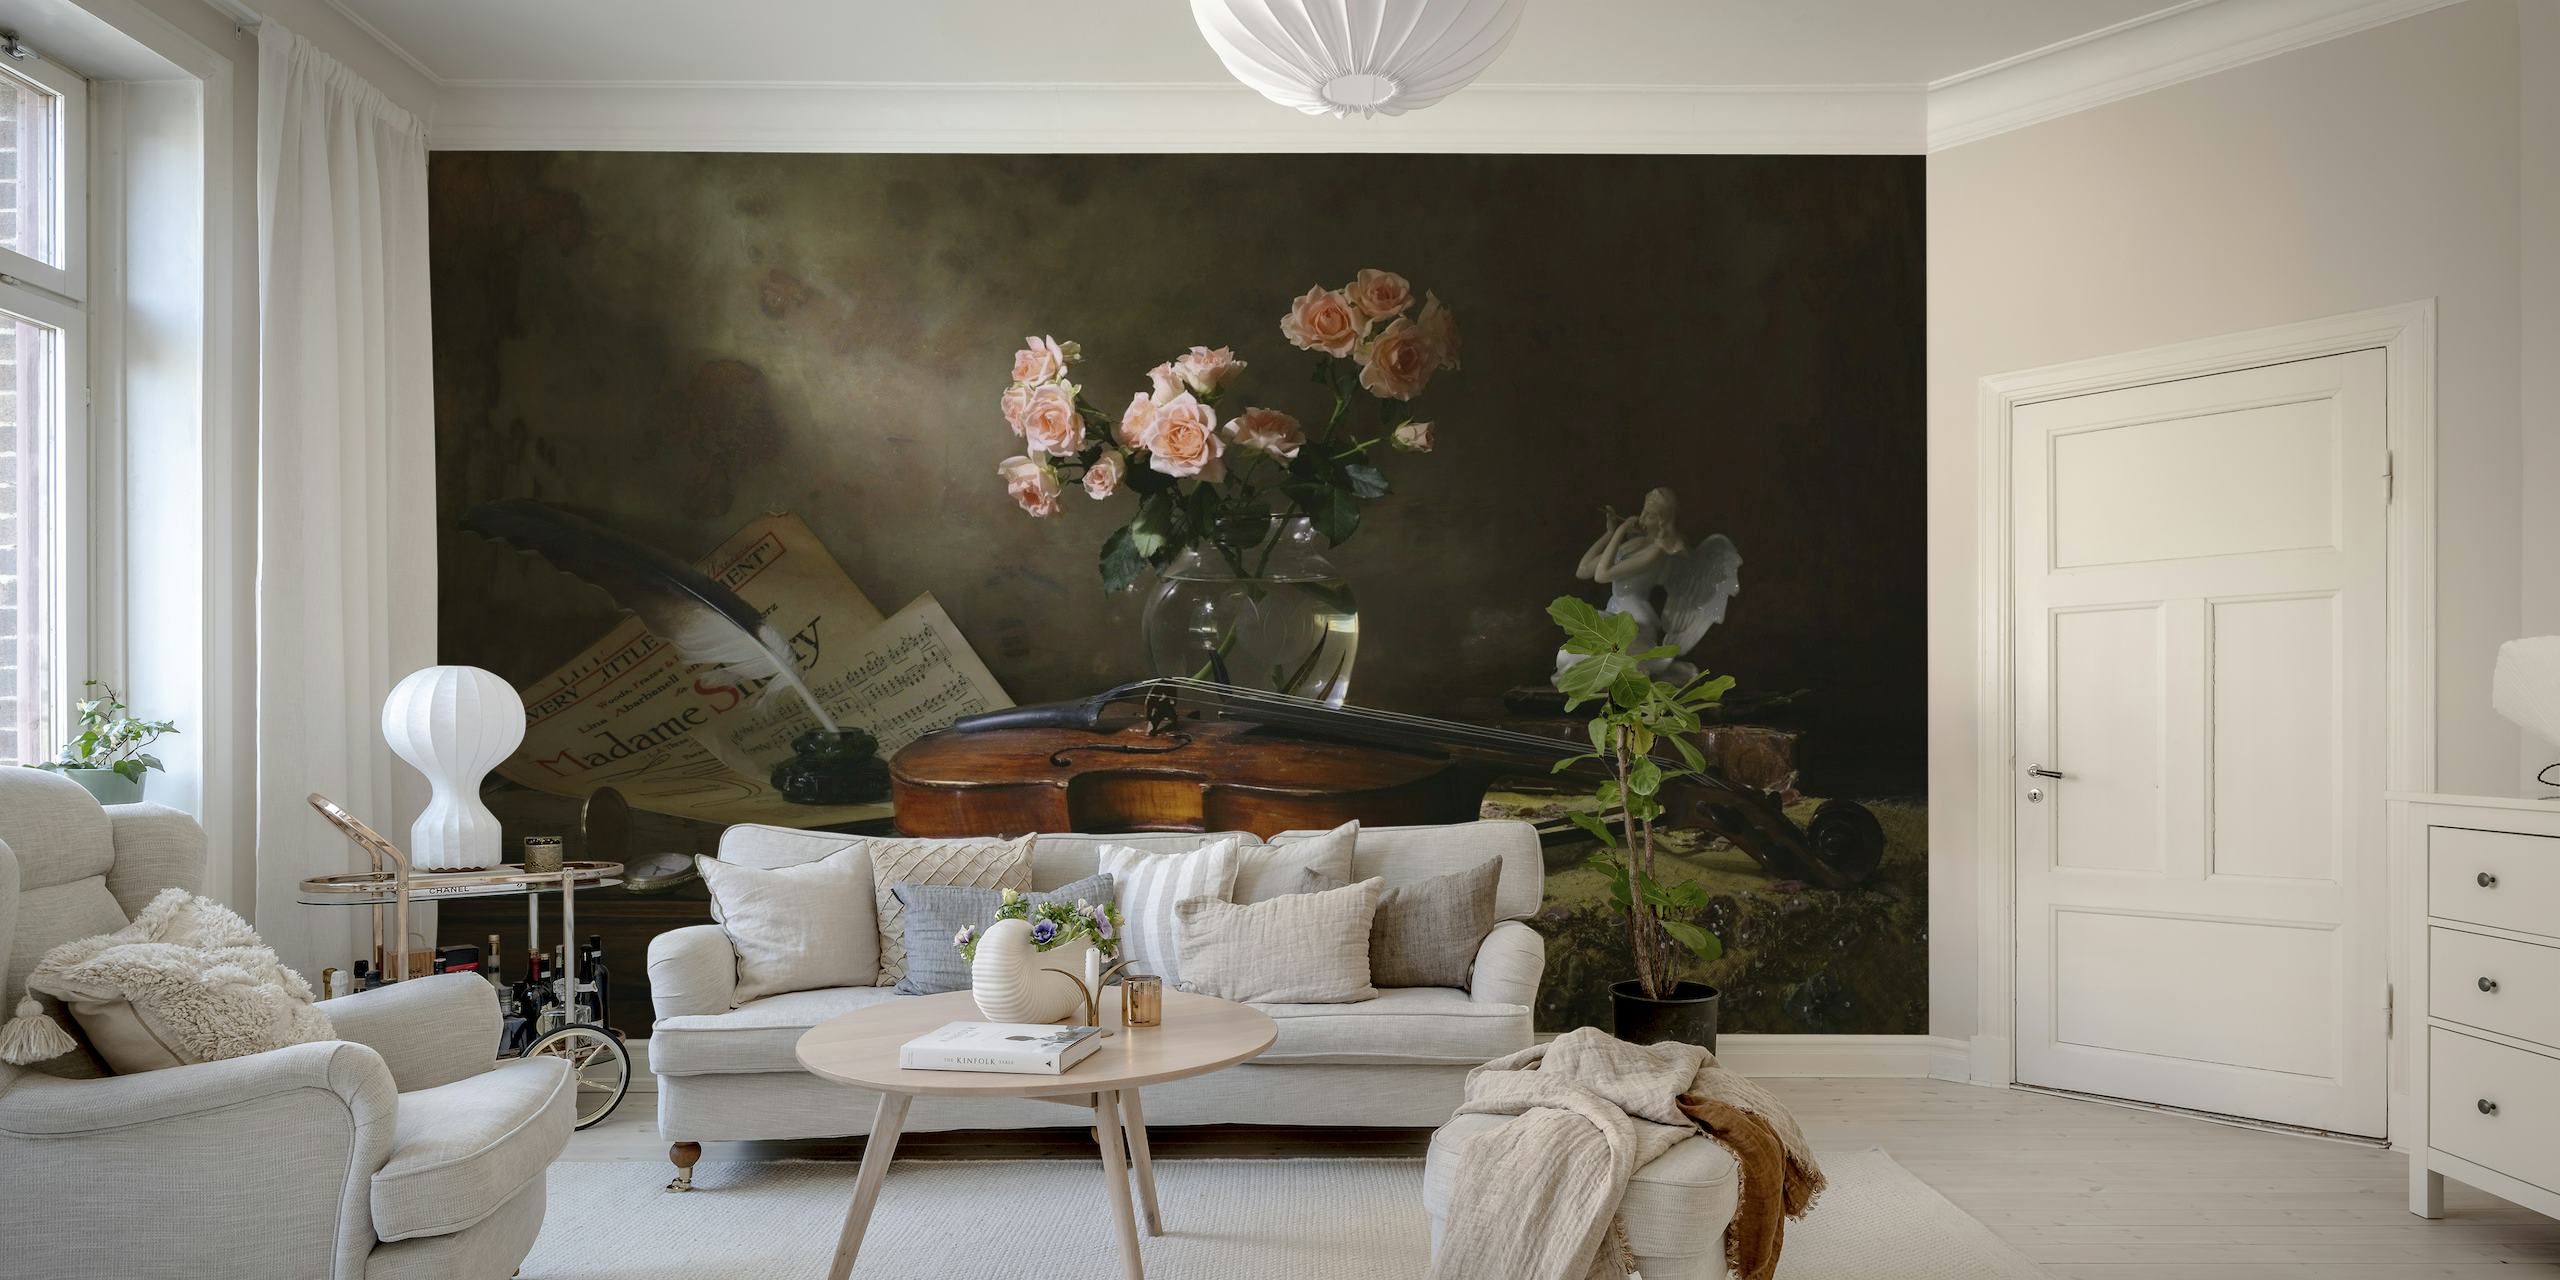 Stillleben-Wandbild mit einer Geige und Rosen im Vintage-Stil